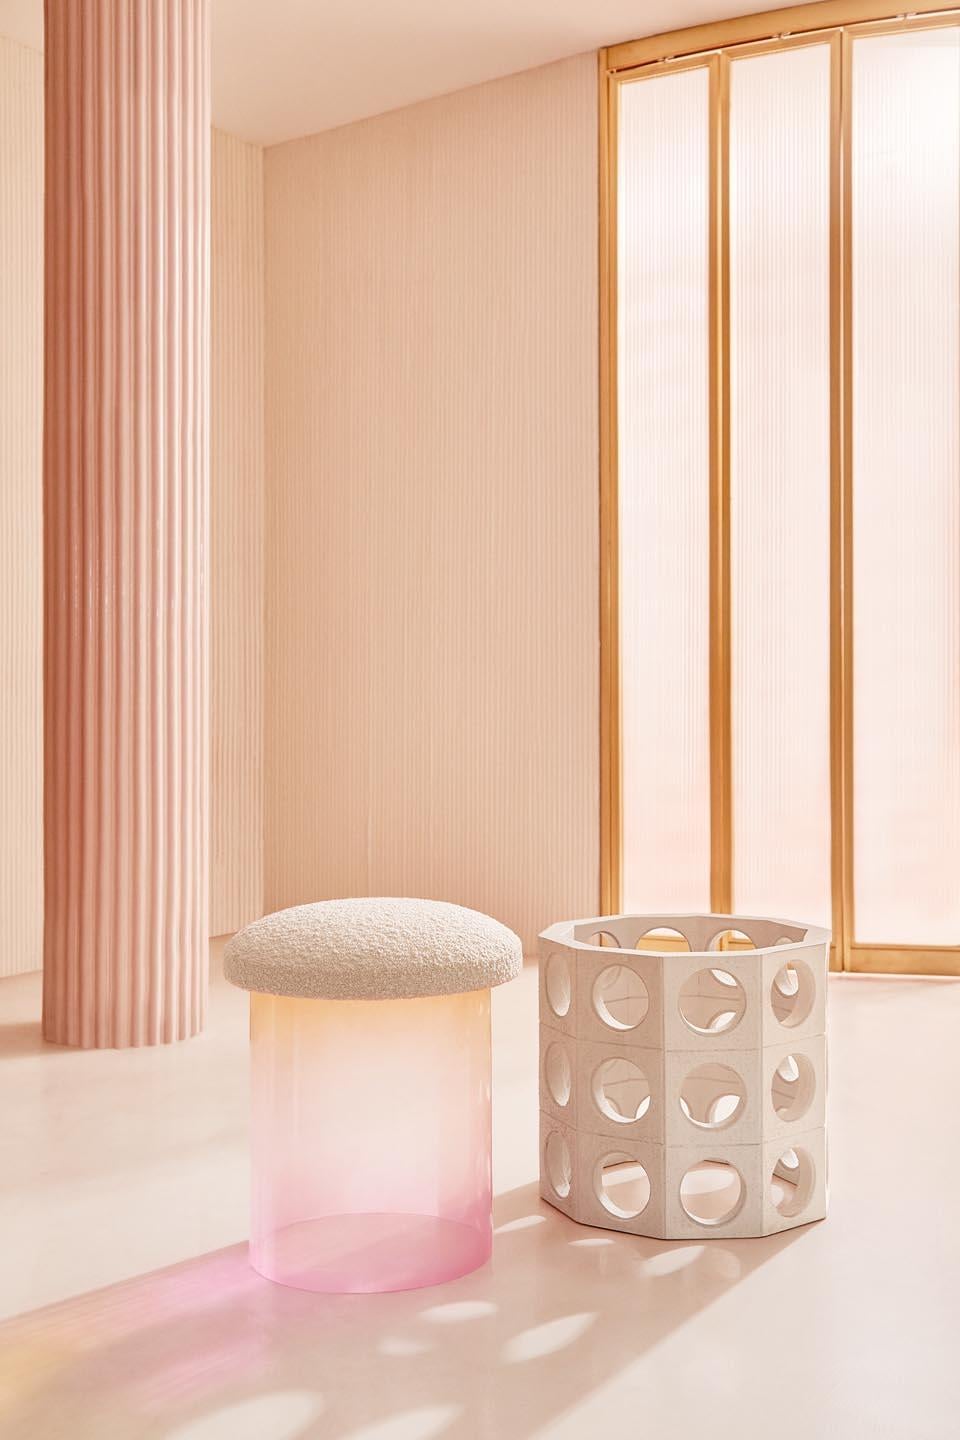 Contemporary Element Pink Pouf by Patricia Bustos de la Torre For Sale